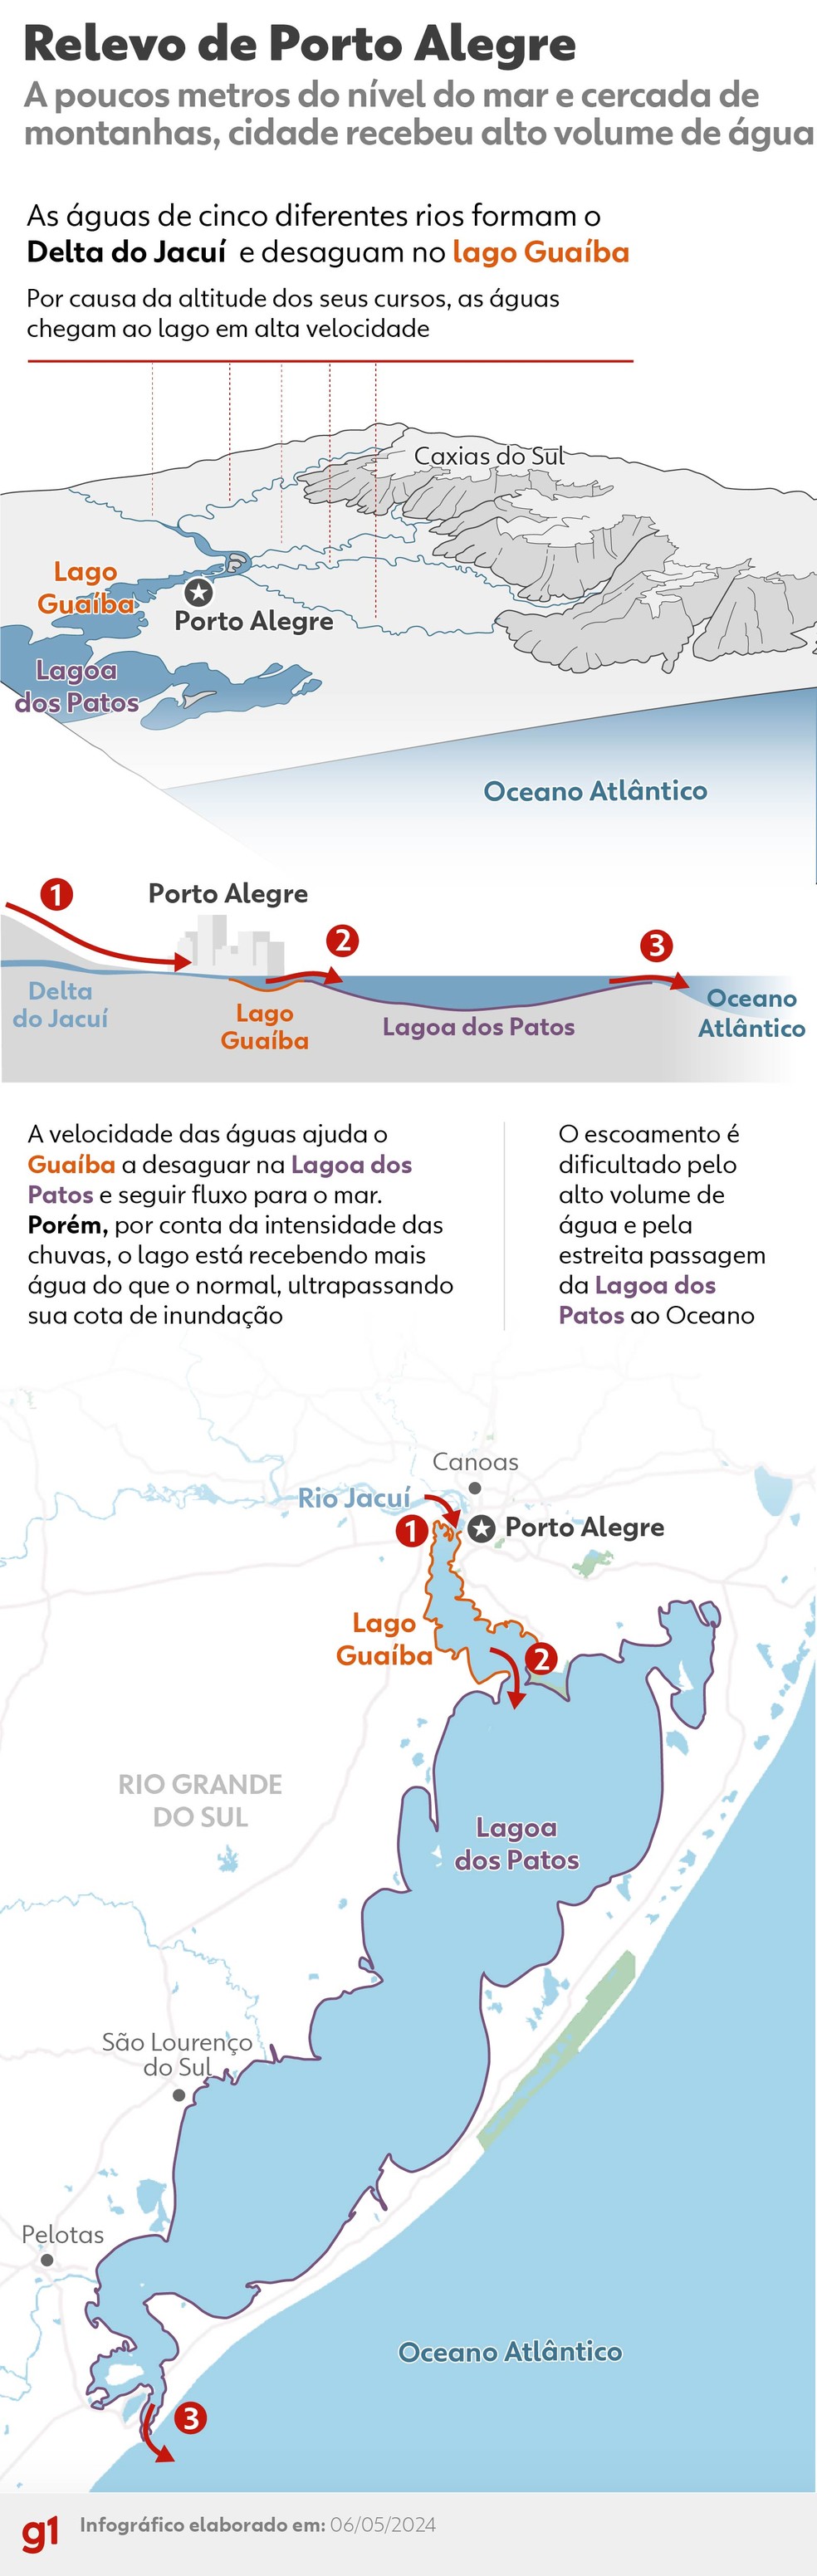 Infográfico mostra geografia de Porto Alegre — Foto: Arte/g1